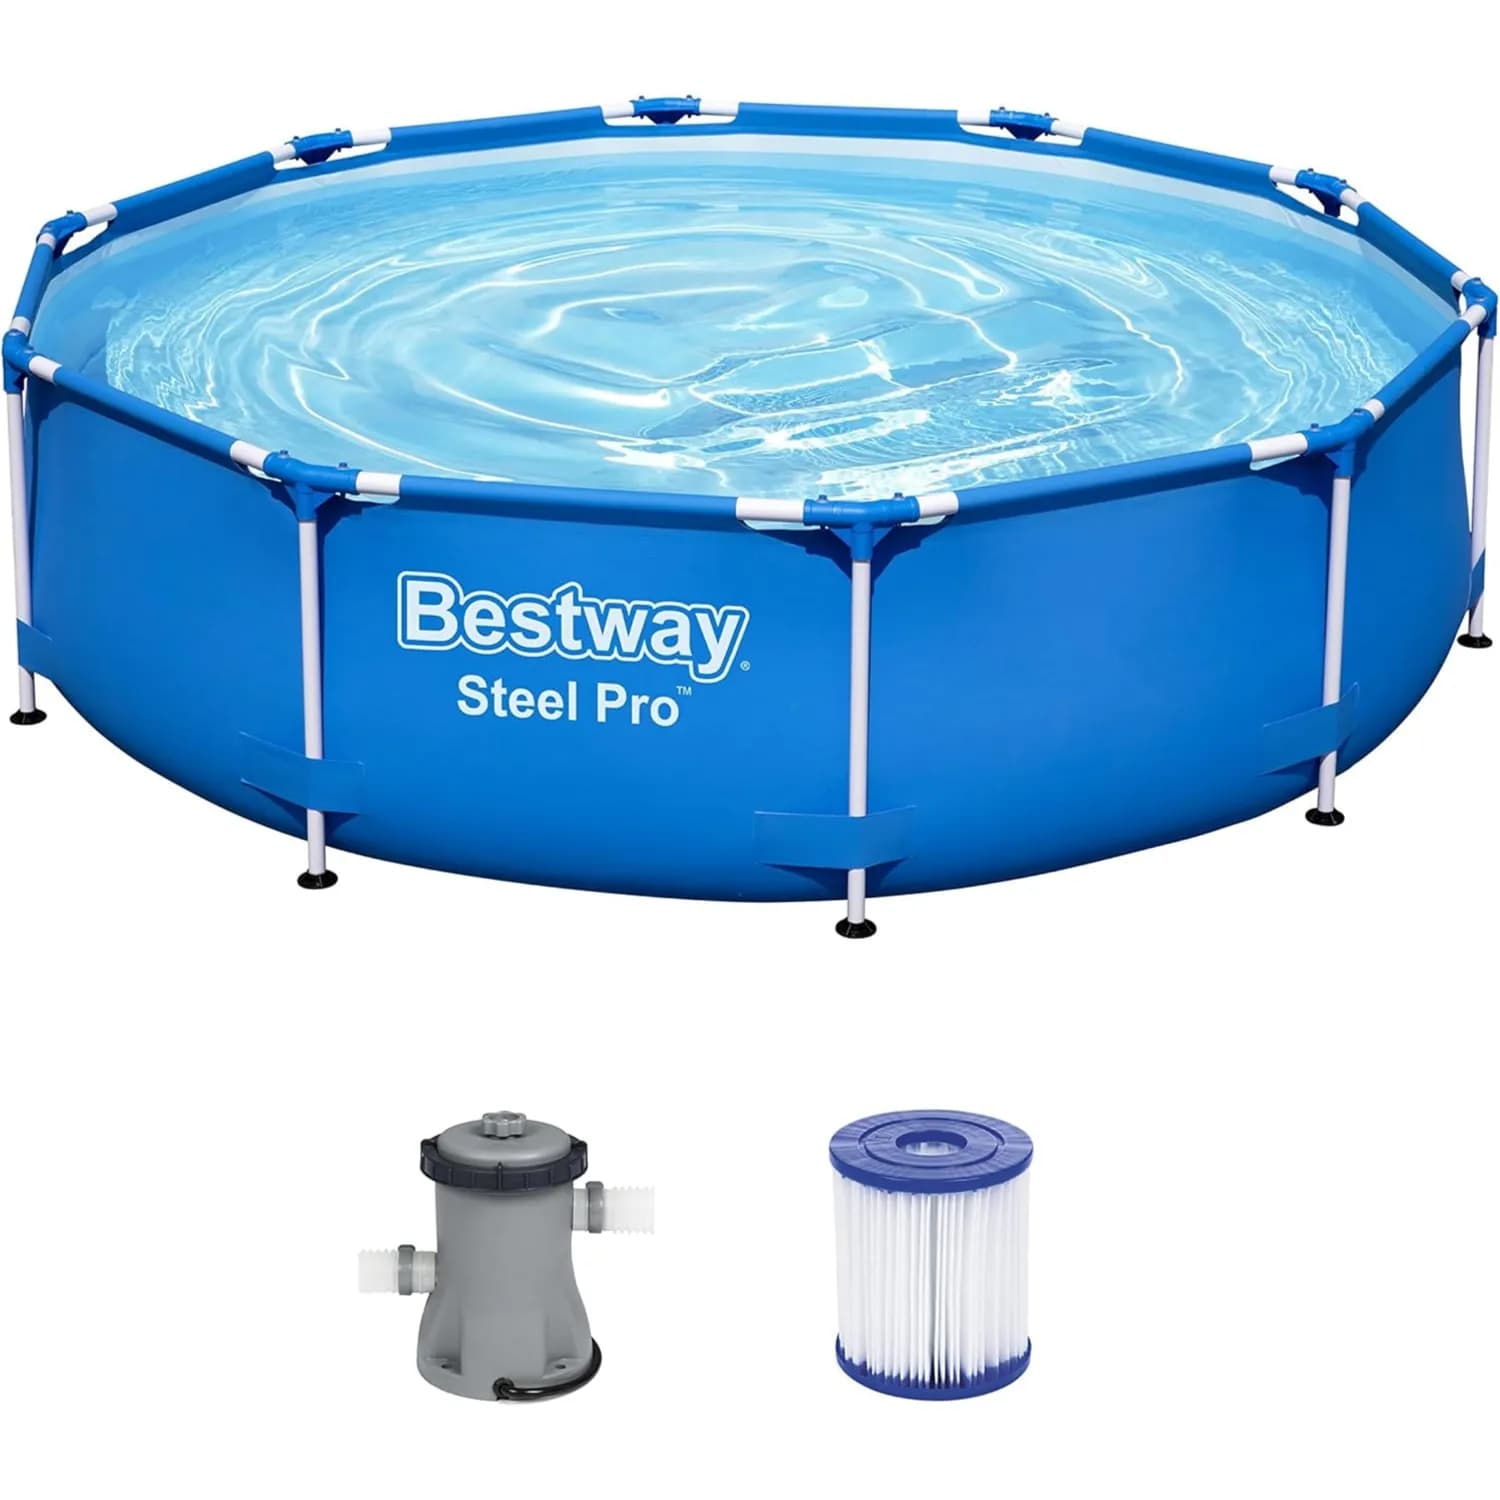 Bestway Steel Pro Round Above Ground Swimming Pool Set 305x76 cm - POLT145